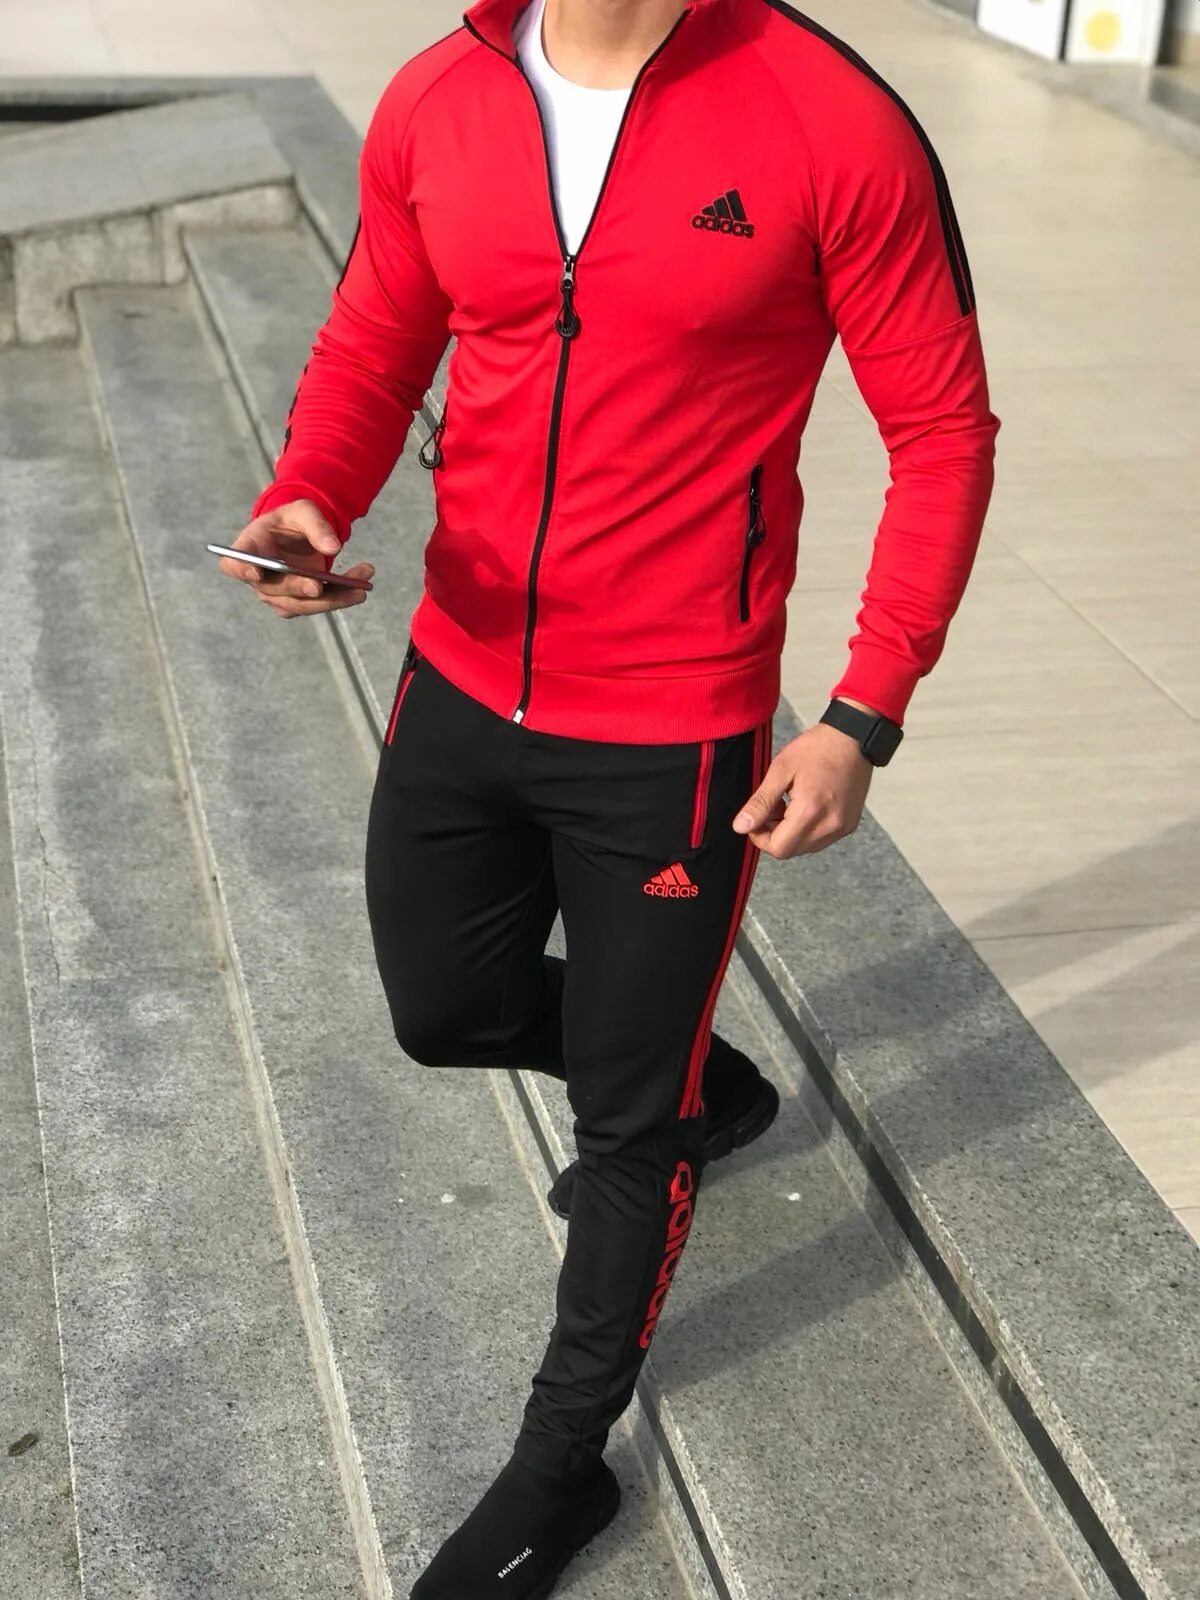 Спортивная классика мужская. Спортивный костюм адидас мужской красный. Adidas костюм мужской 2021. Красный костюм адидас мужской. Мужской спортивный костюм adidas 2021.